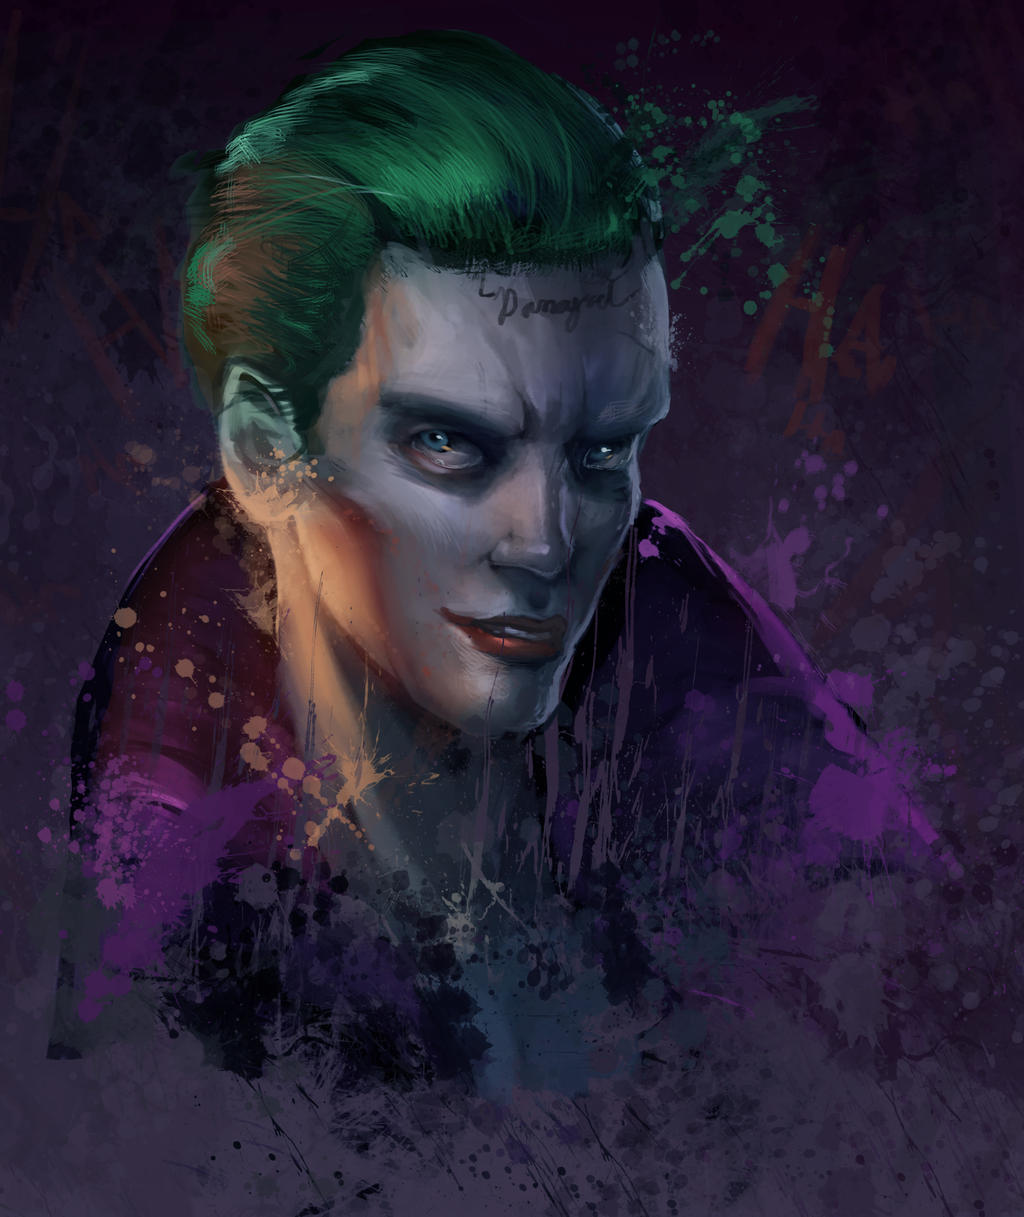 Joker by Kyveri on DeviantArt